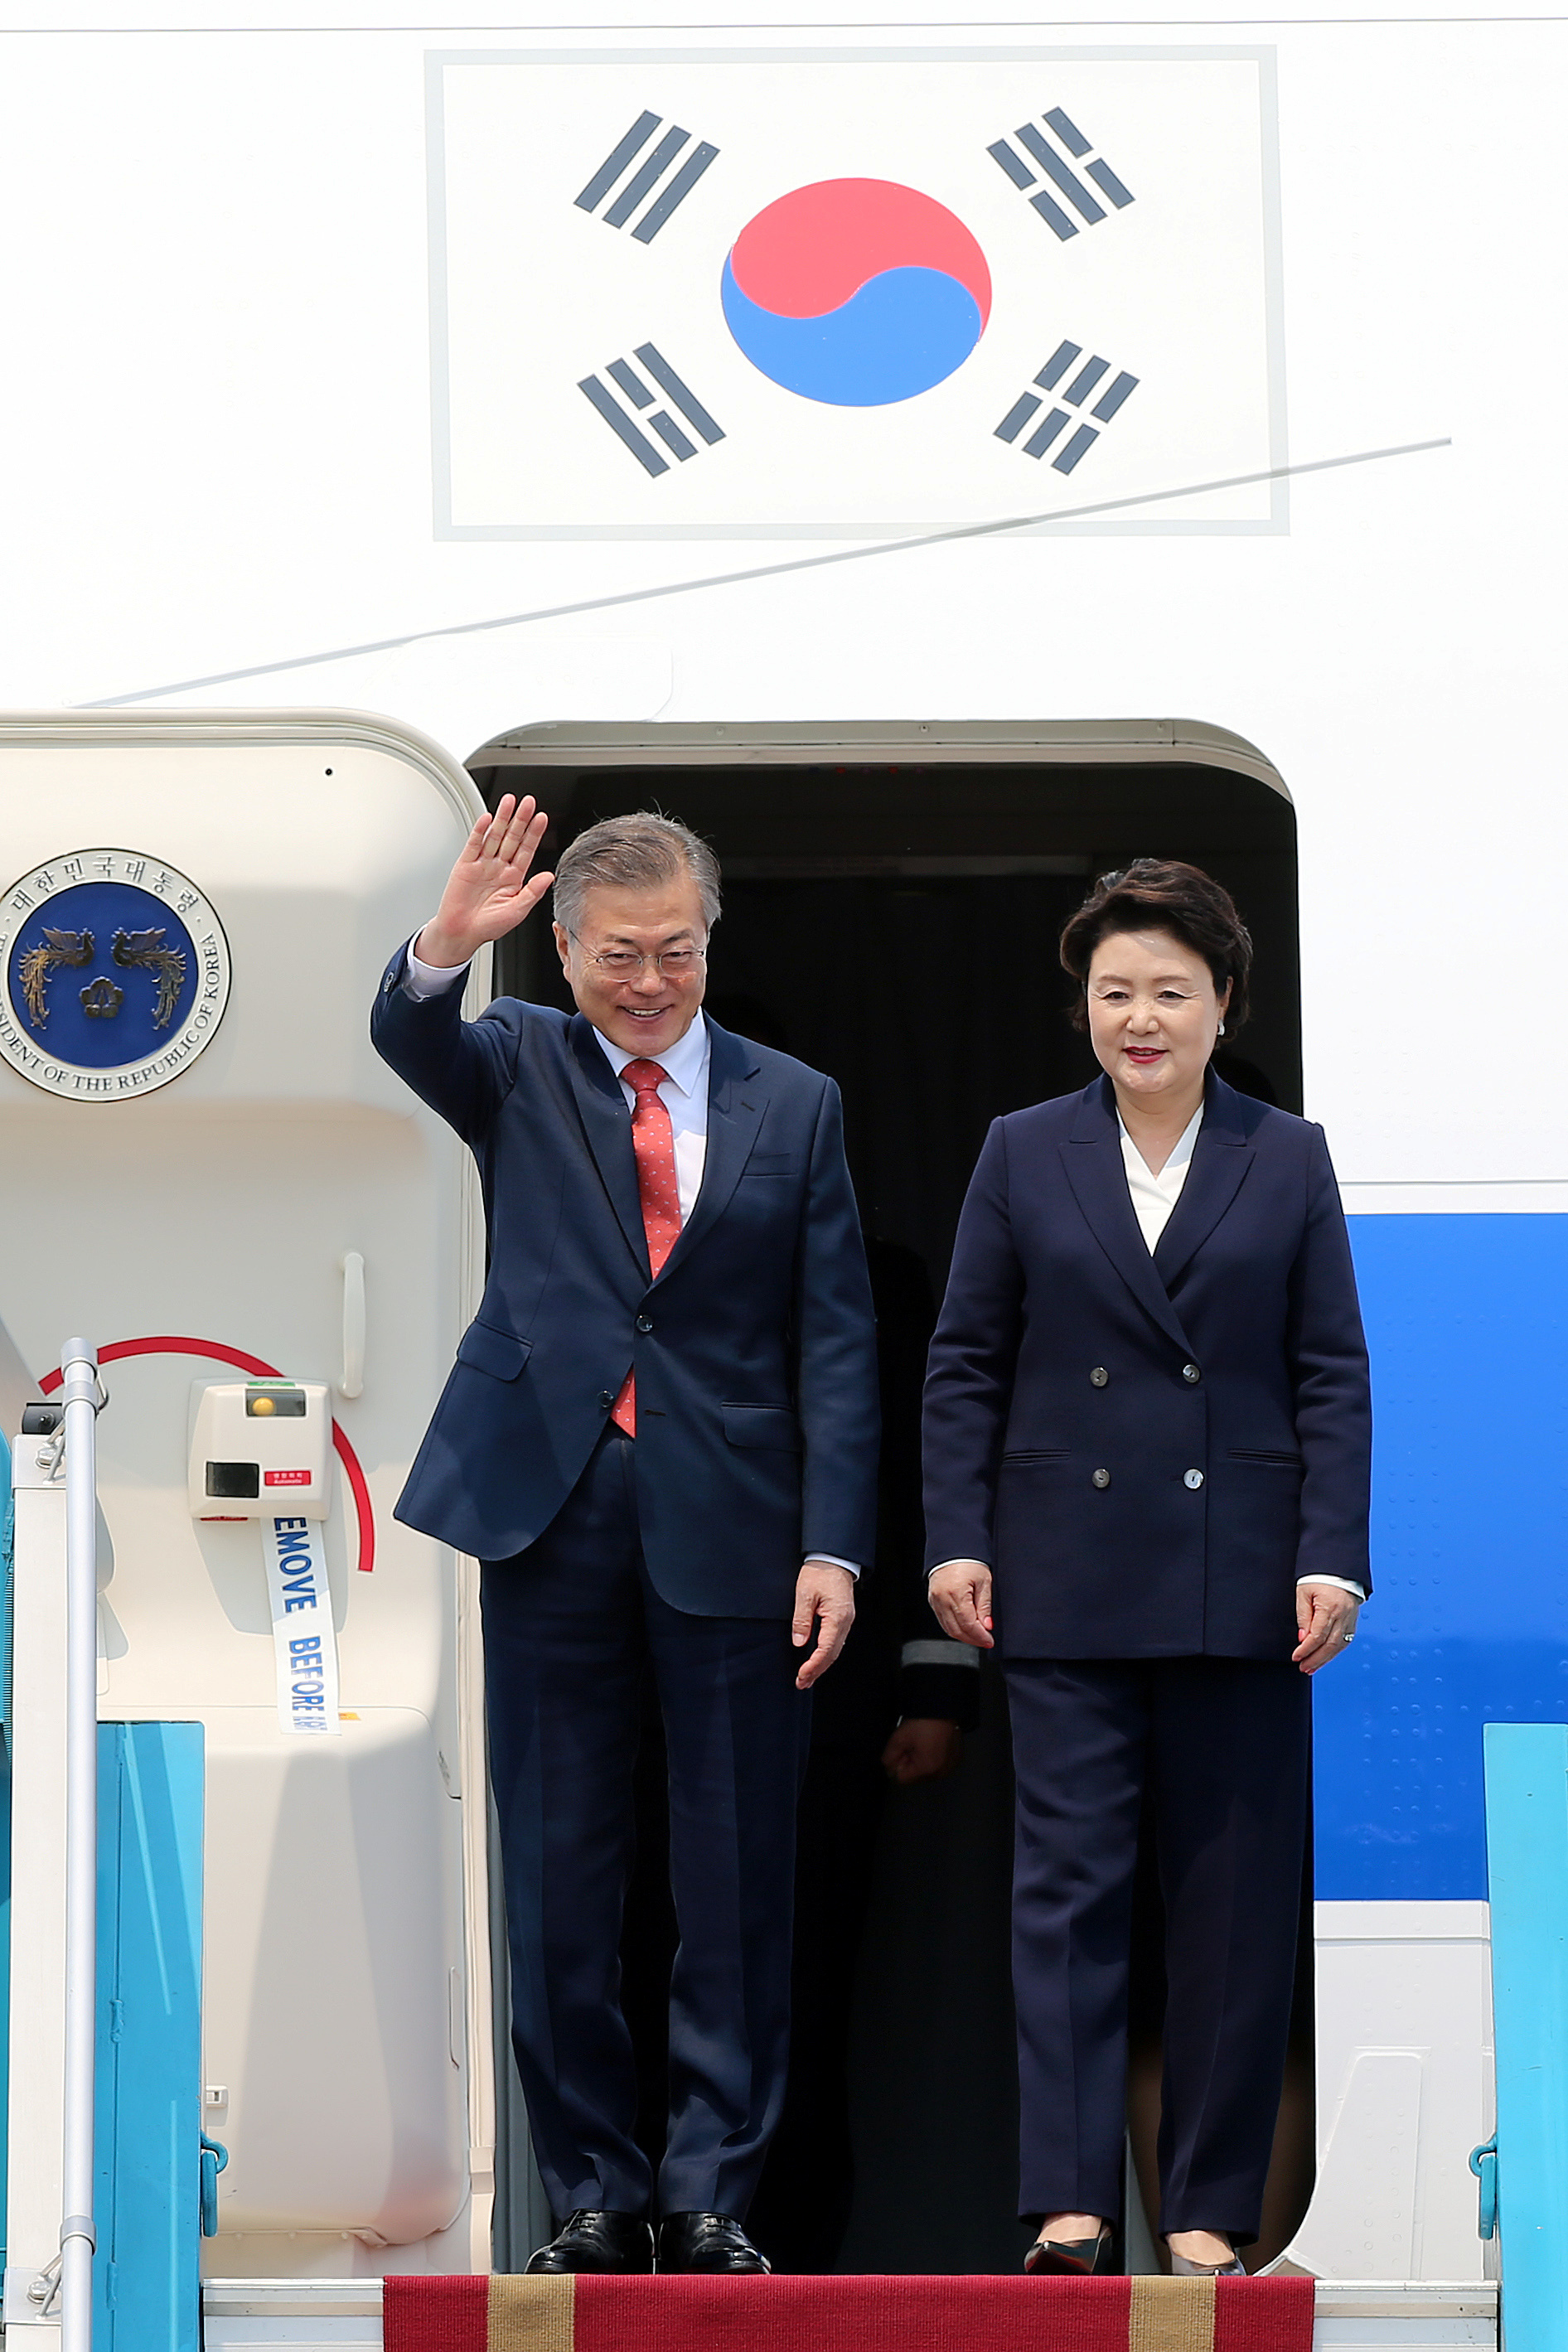 رئيس كوريا الجنوبية يصل فيتنام